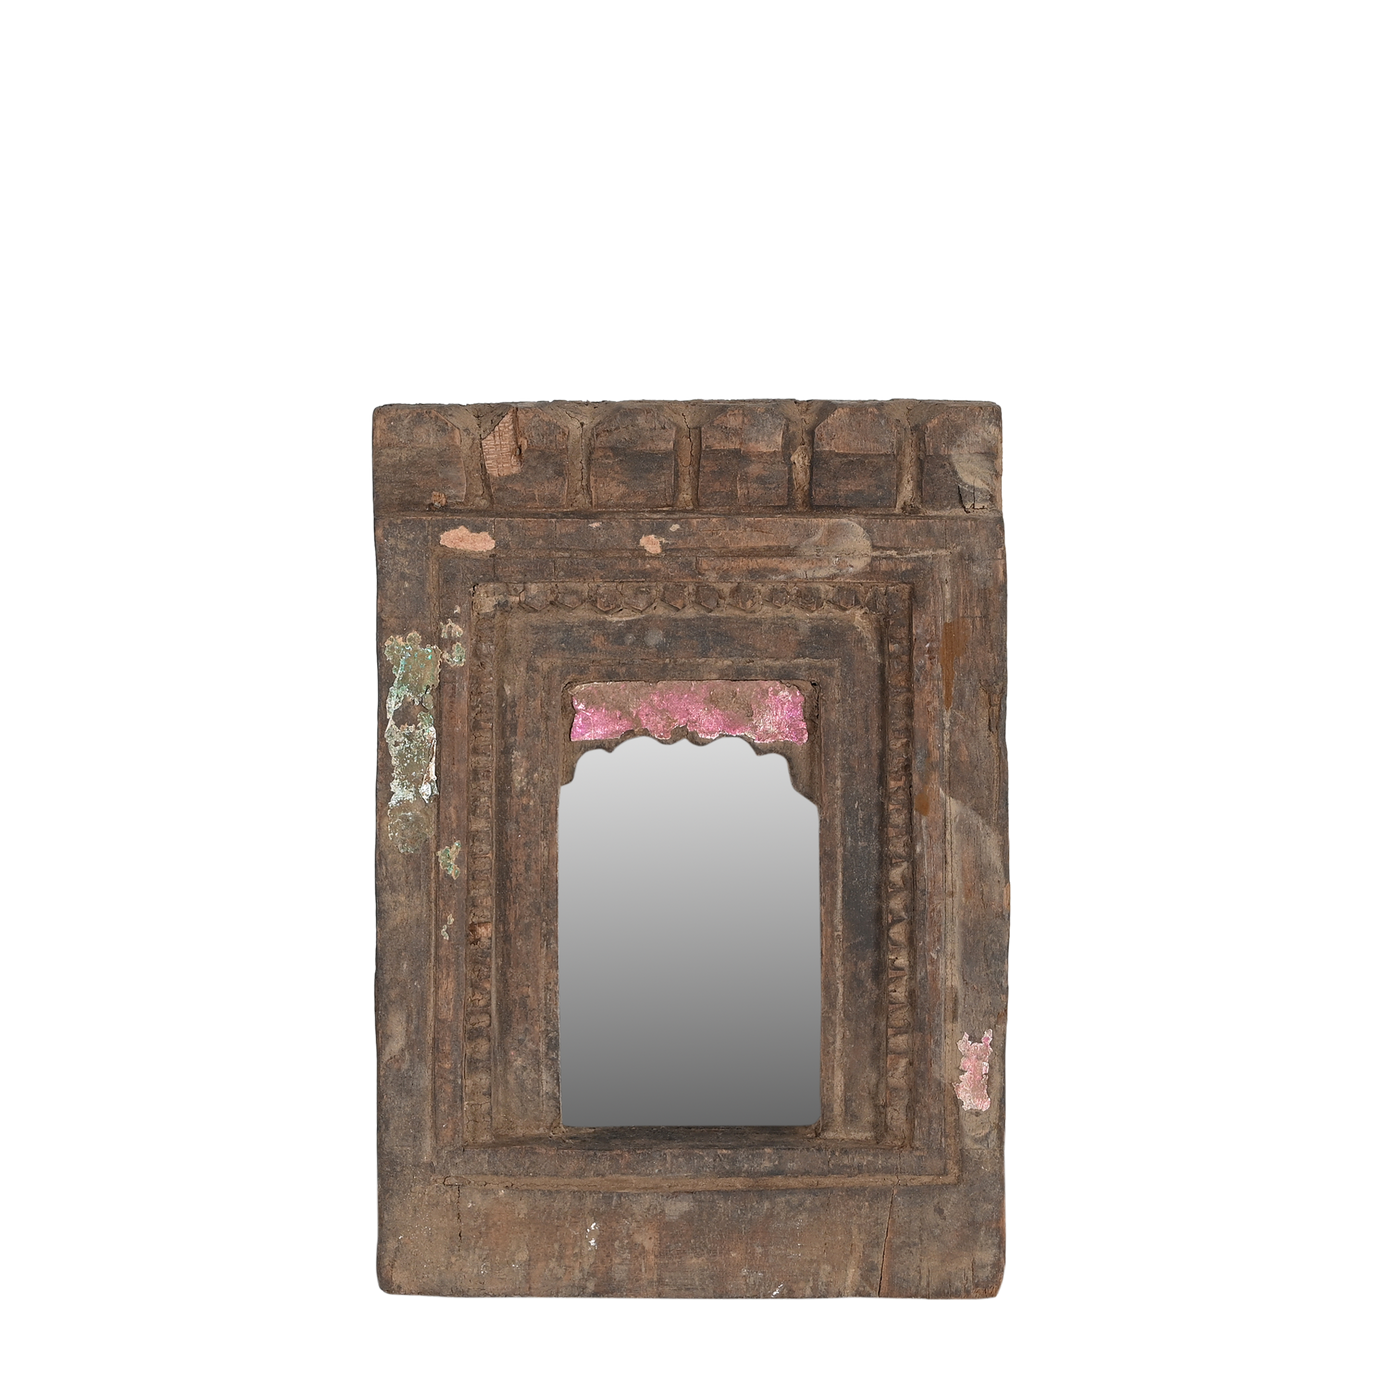 Mandir - Temple mirror n°42